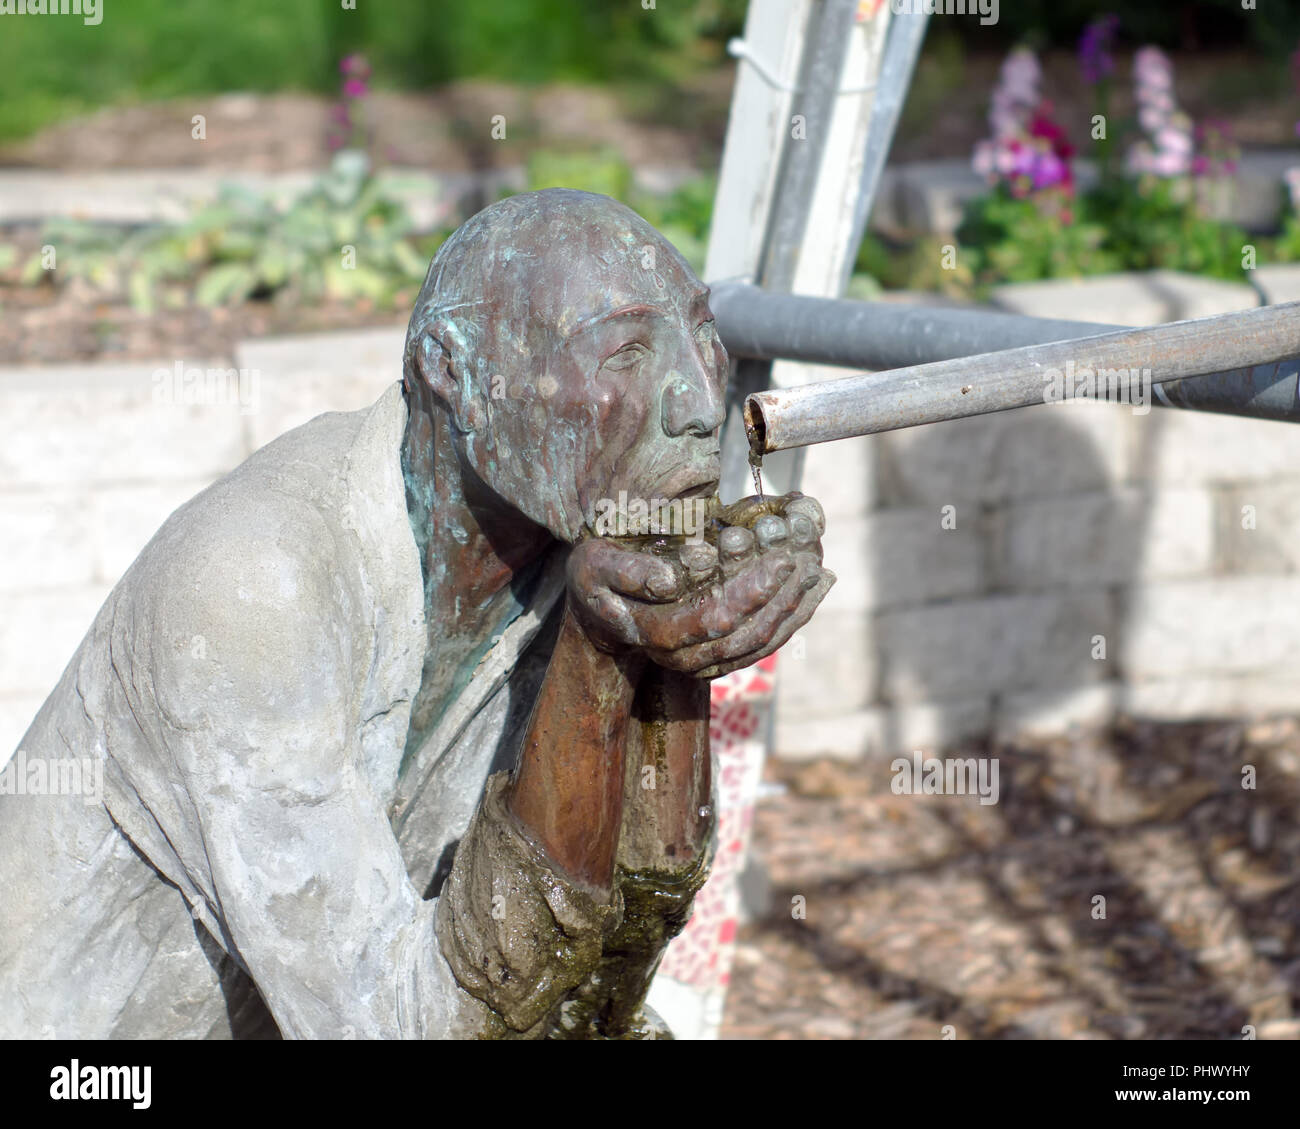 Eine kupferne Statue eines Mannes mit hohlen Händen fangen fließendes Wasser aus der Leitung zu trinken. South Texas Botanischen Gärten in Corpus Christi, Texas USA. Stockfoto